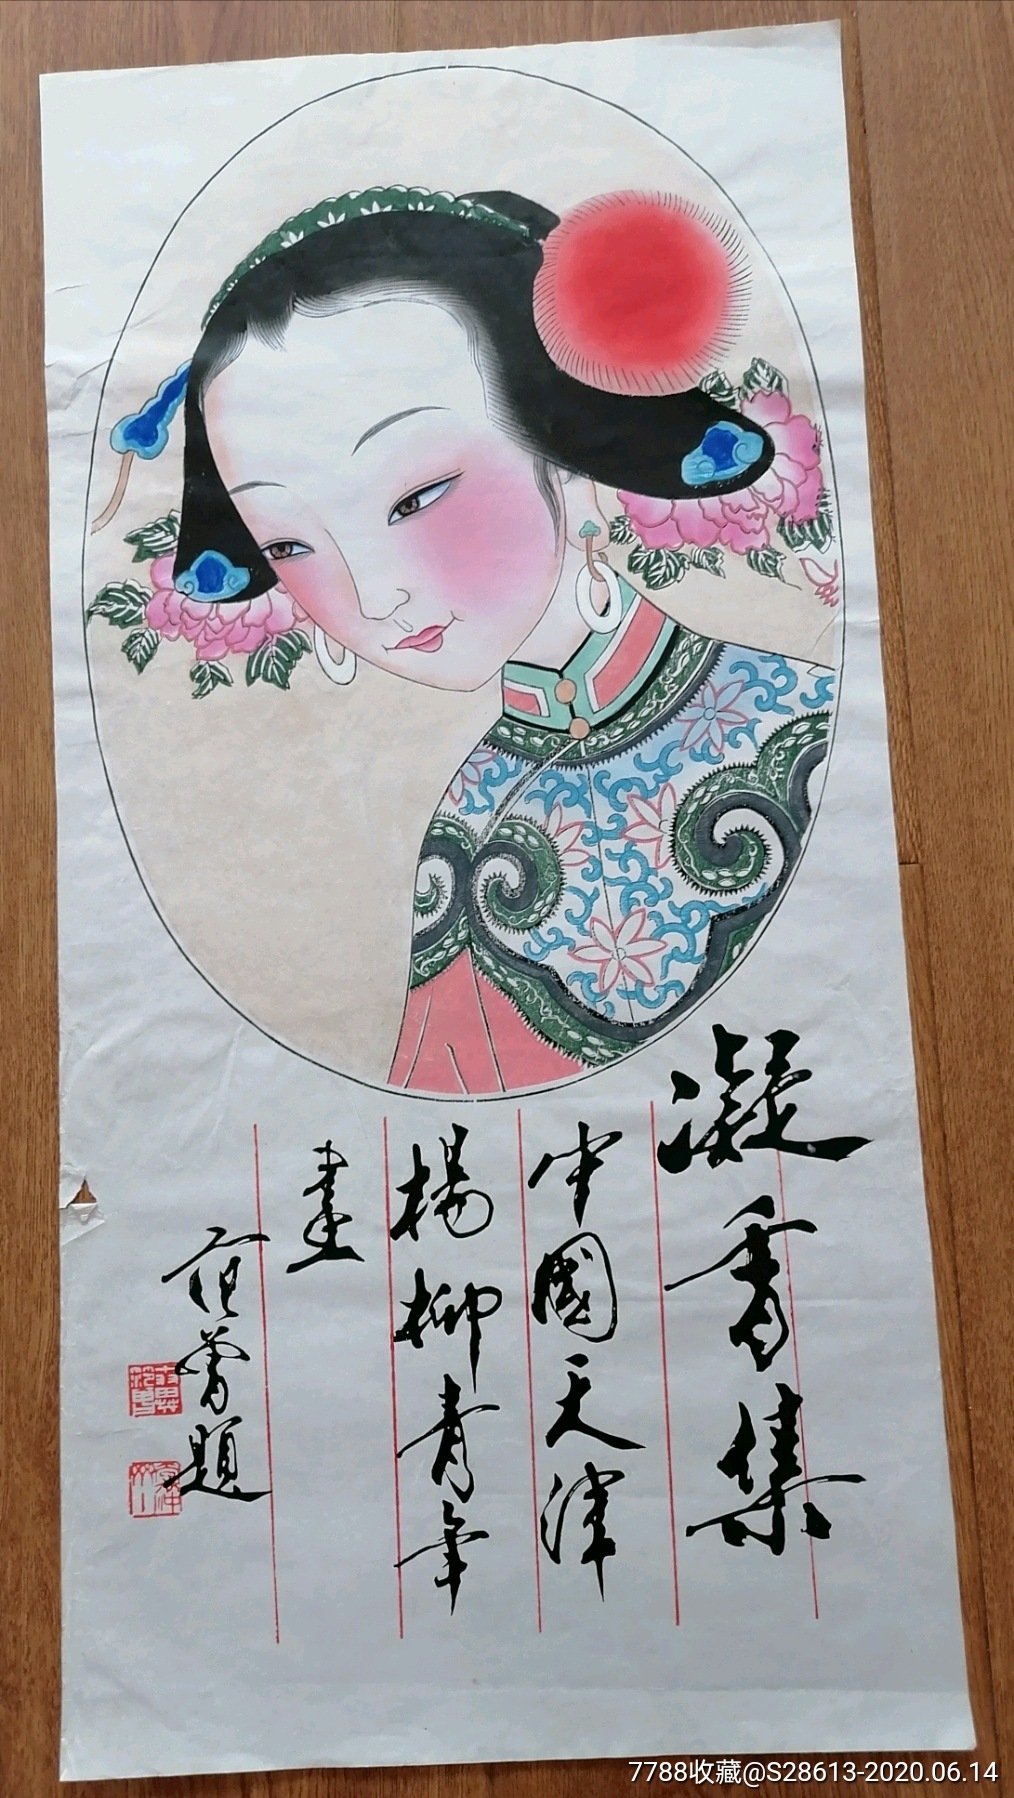 早期杨柳青木版年画:仕女